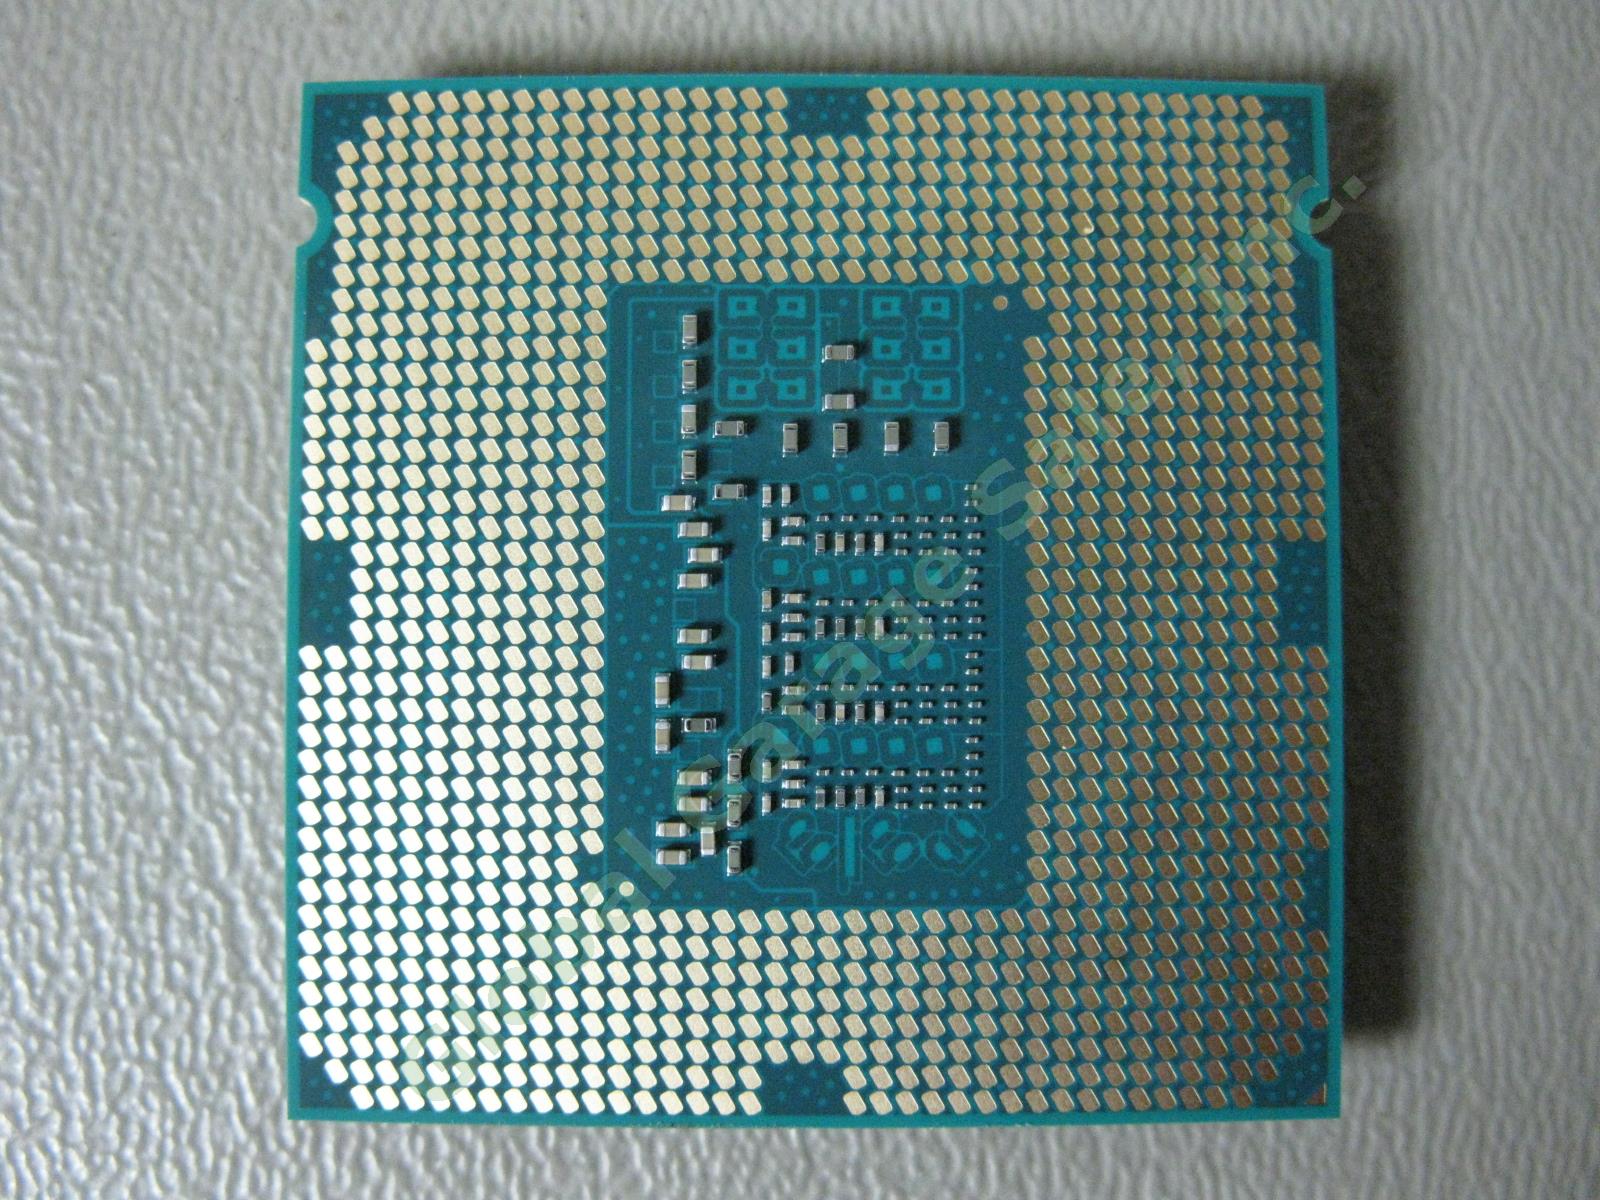 RARE SR14S Intel Xeon E3-1275v3 3.5GHz 8MB Quad Core CPU LGA1150 Processor 84W 1